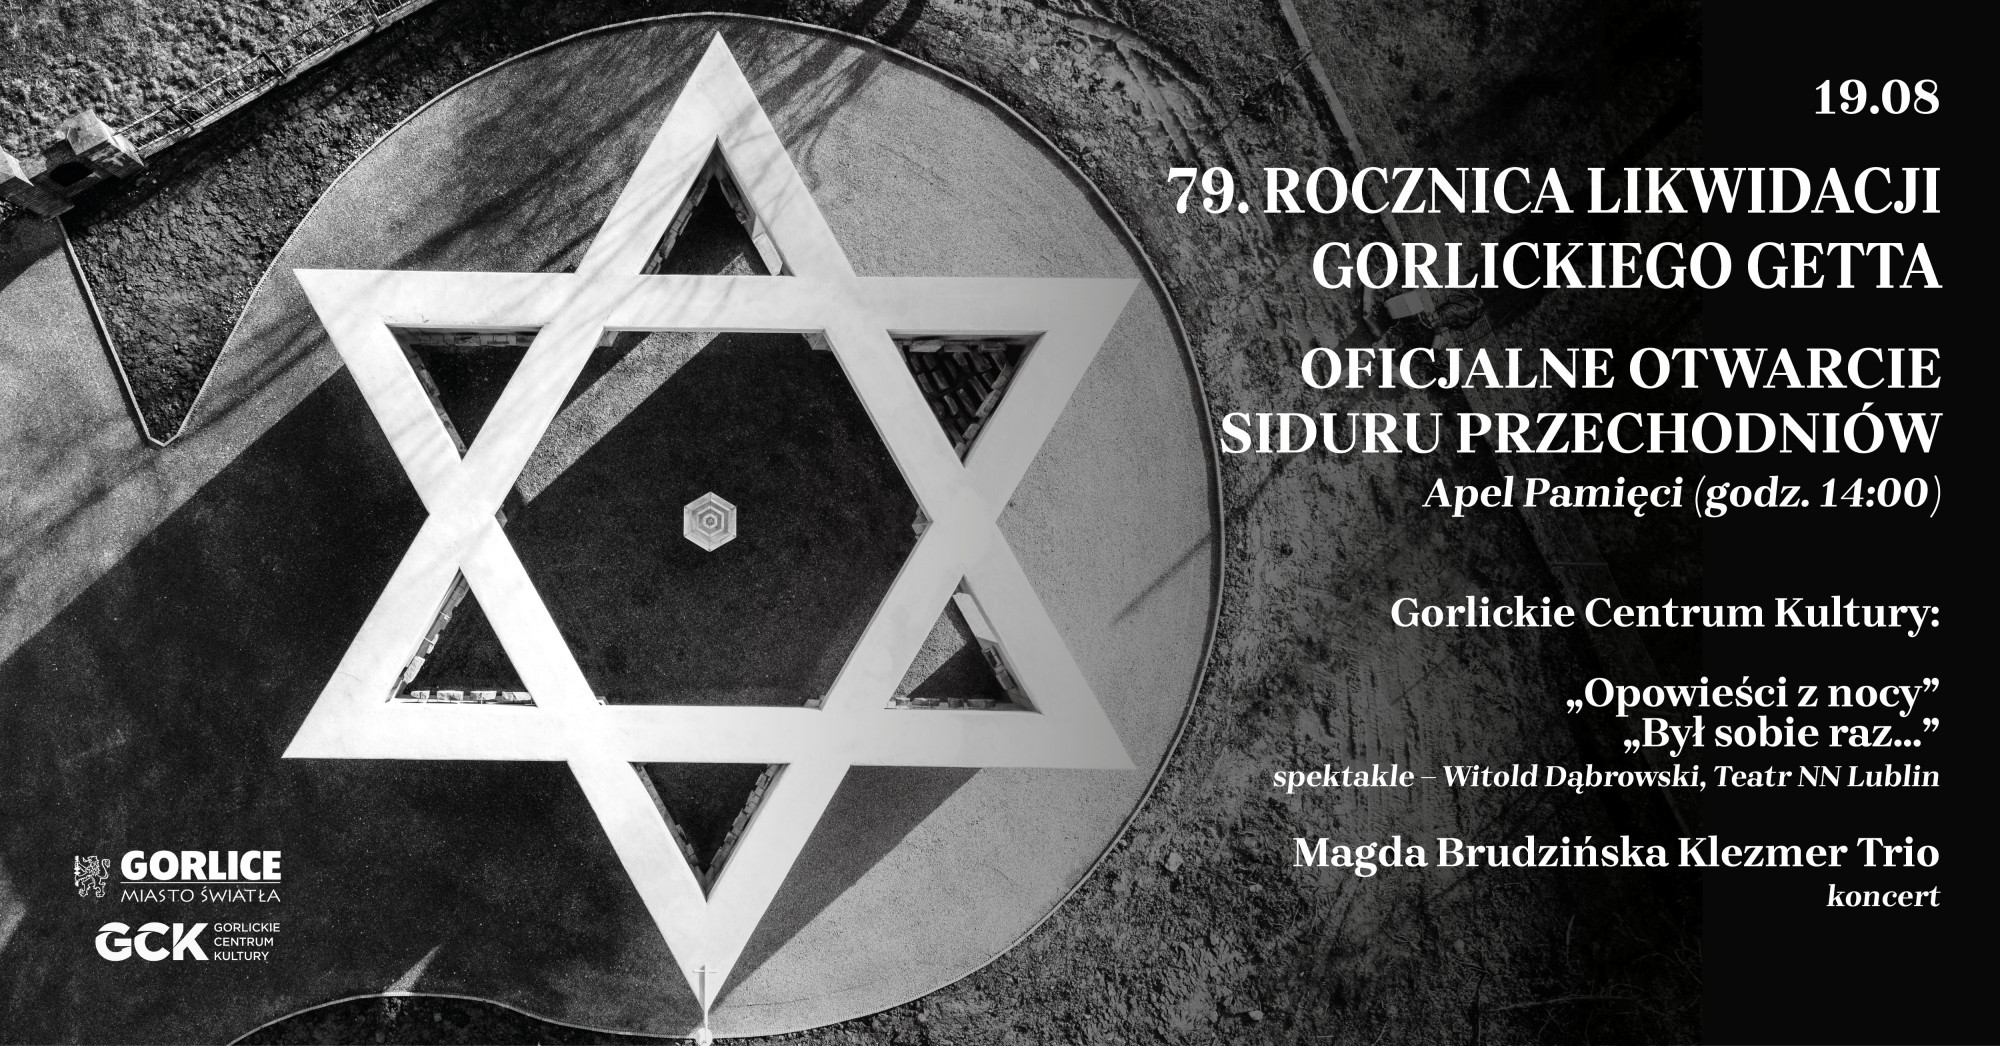 79. rocznica likwidacji gorlickiego getta i otwarcie Siduru Przechodniów